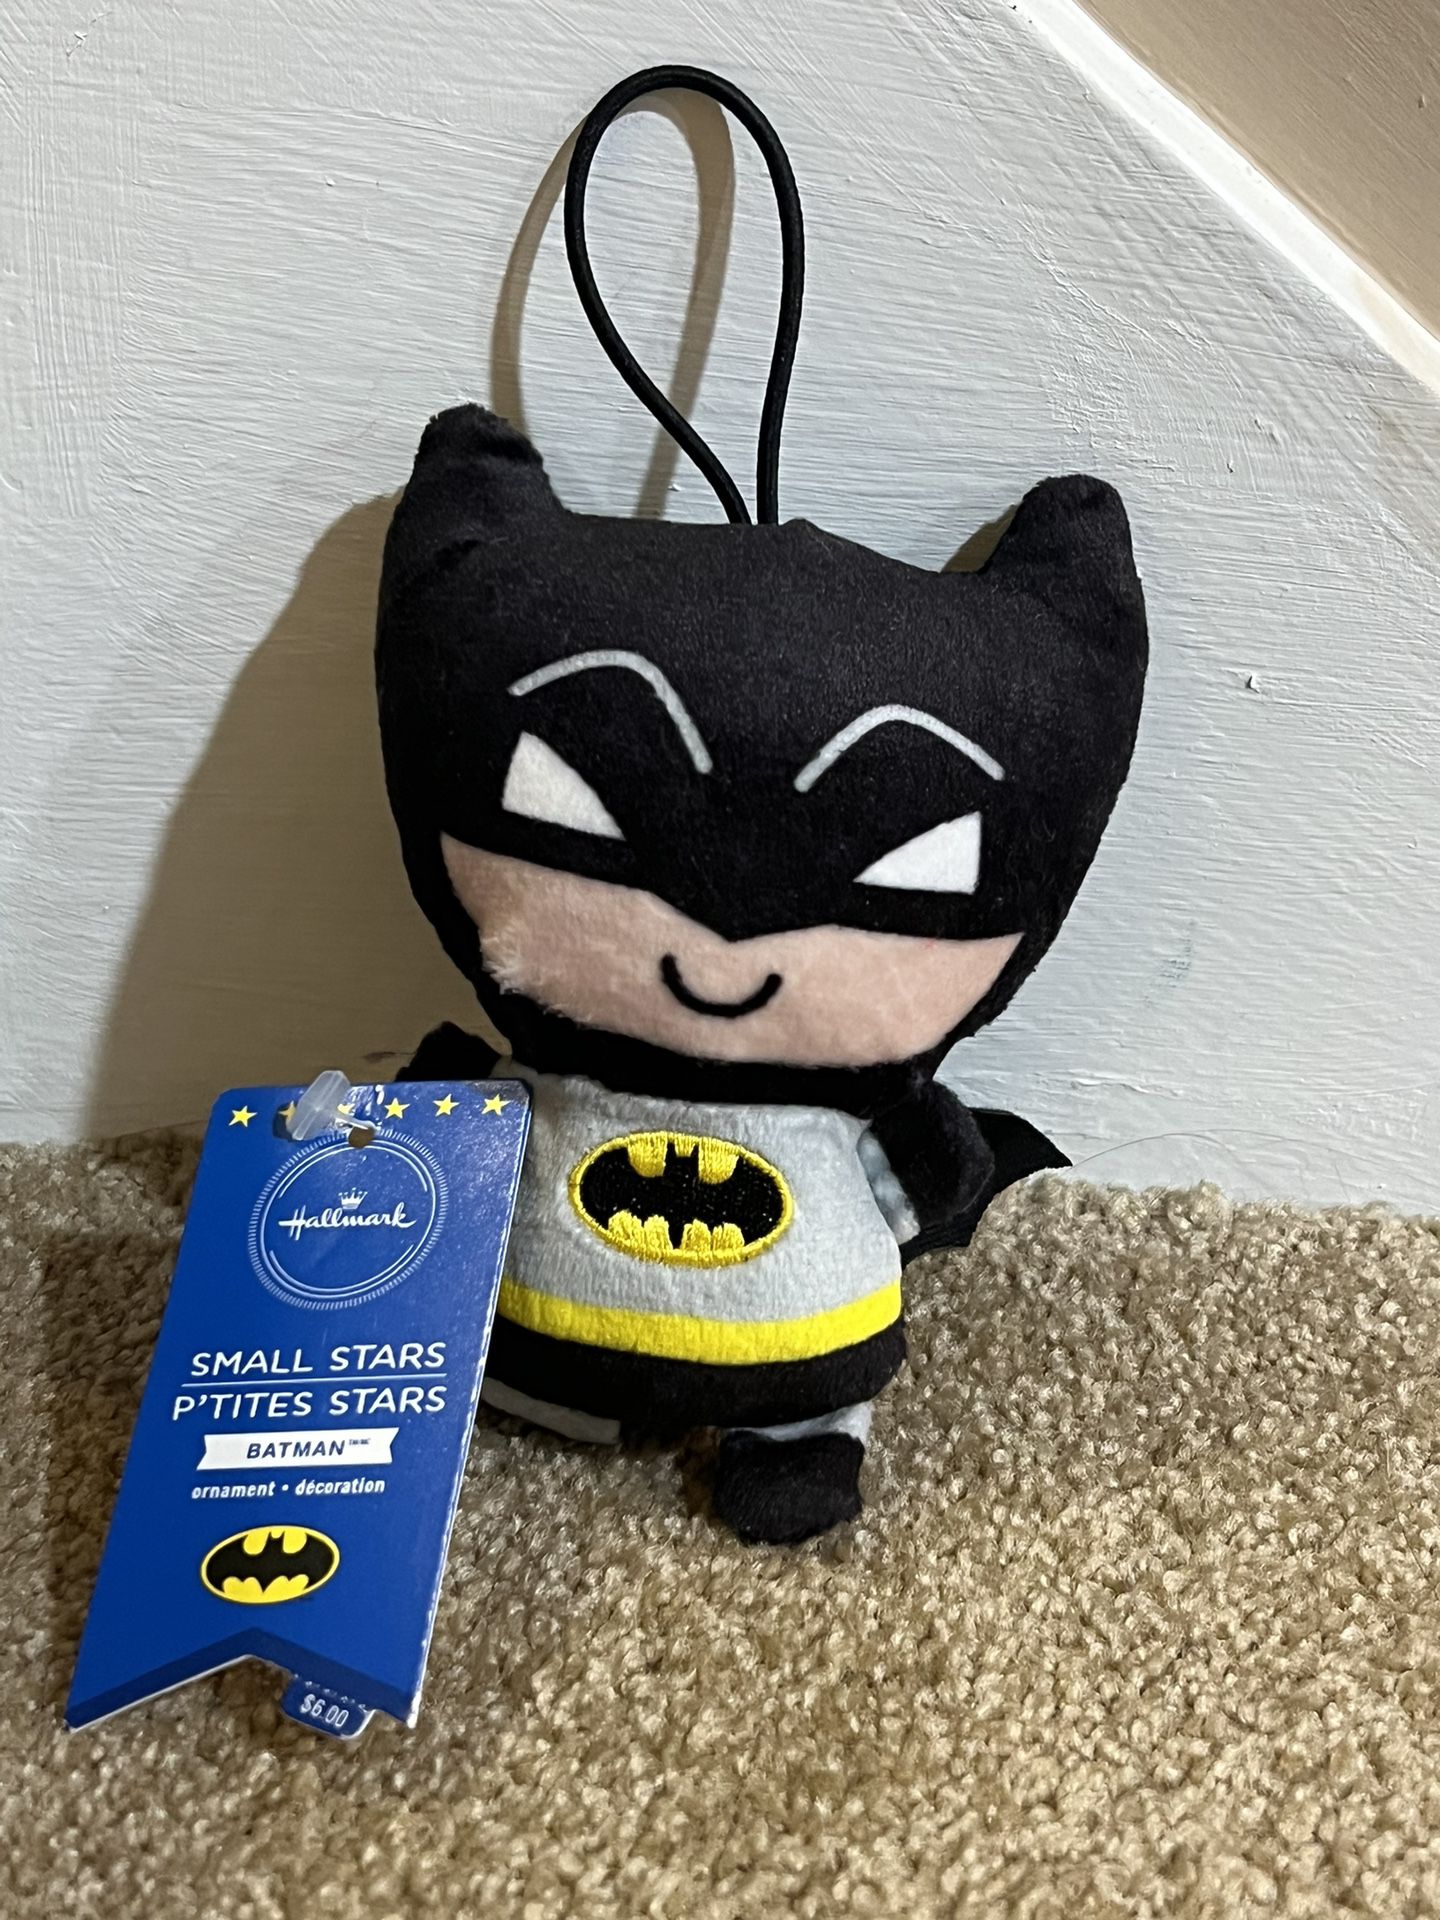 DC Comics Batman Hallmark Small Stars Plush Ornament New with Tags